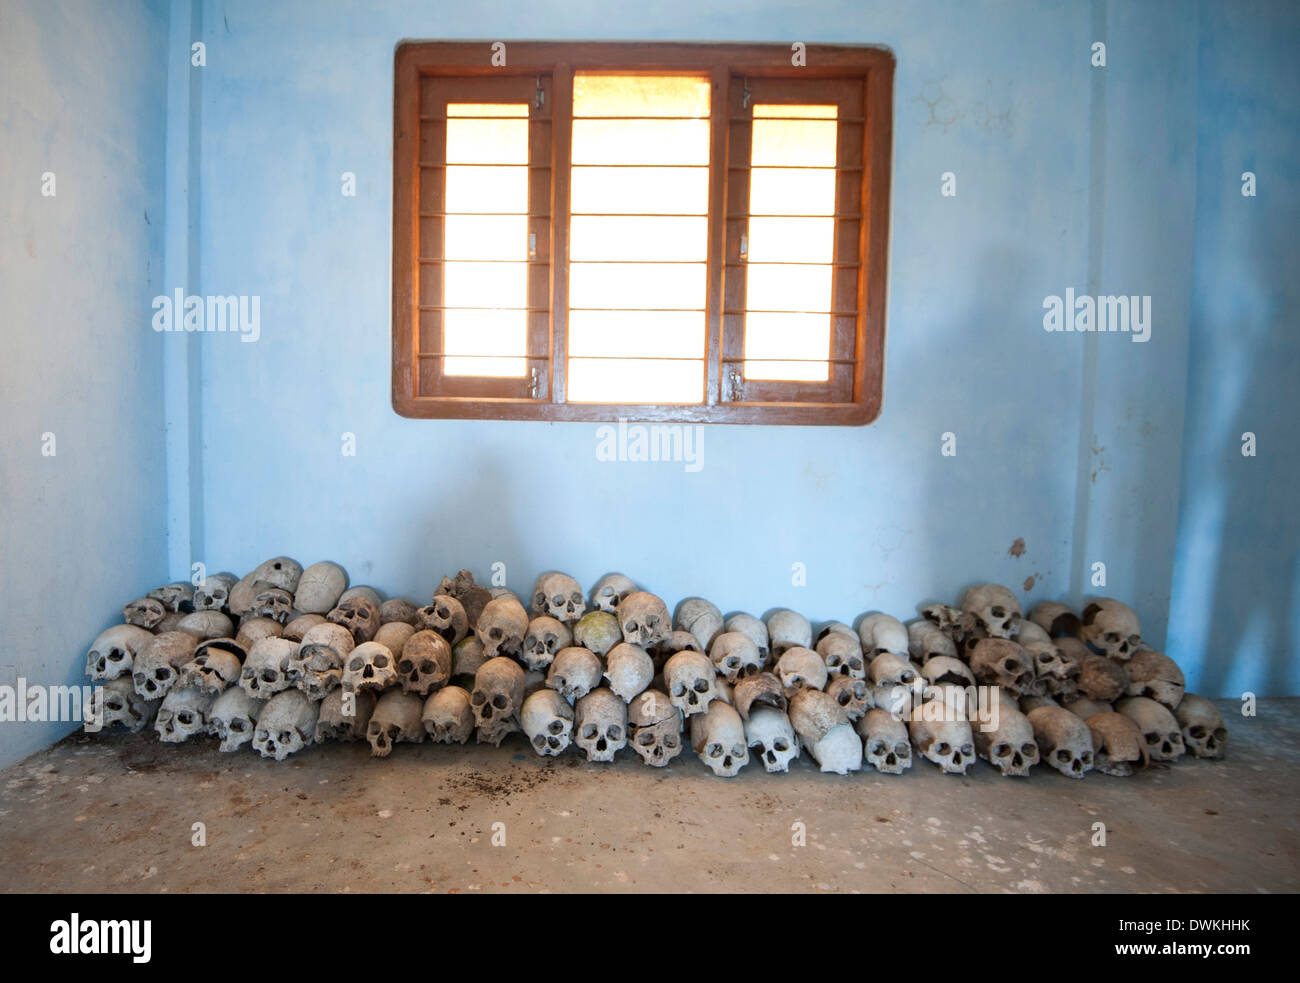 Des crânes humains, chassés par les hommes des tribus Konyak, conservés dans le centre communautaire du village, Chingnyu, Nagaland, Inde Banque D'Images